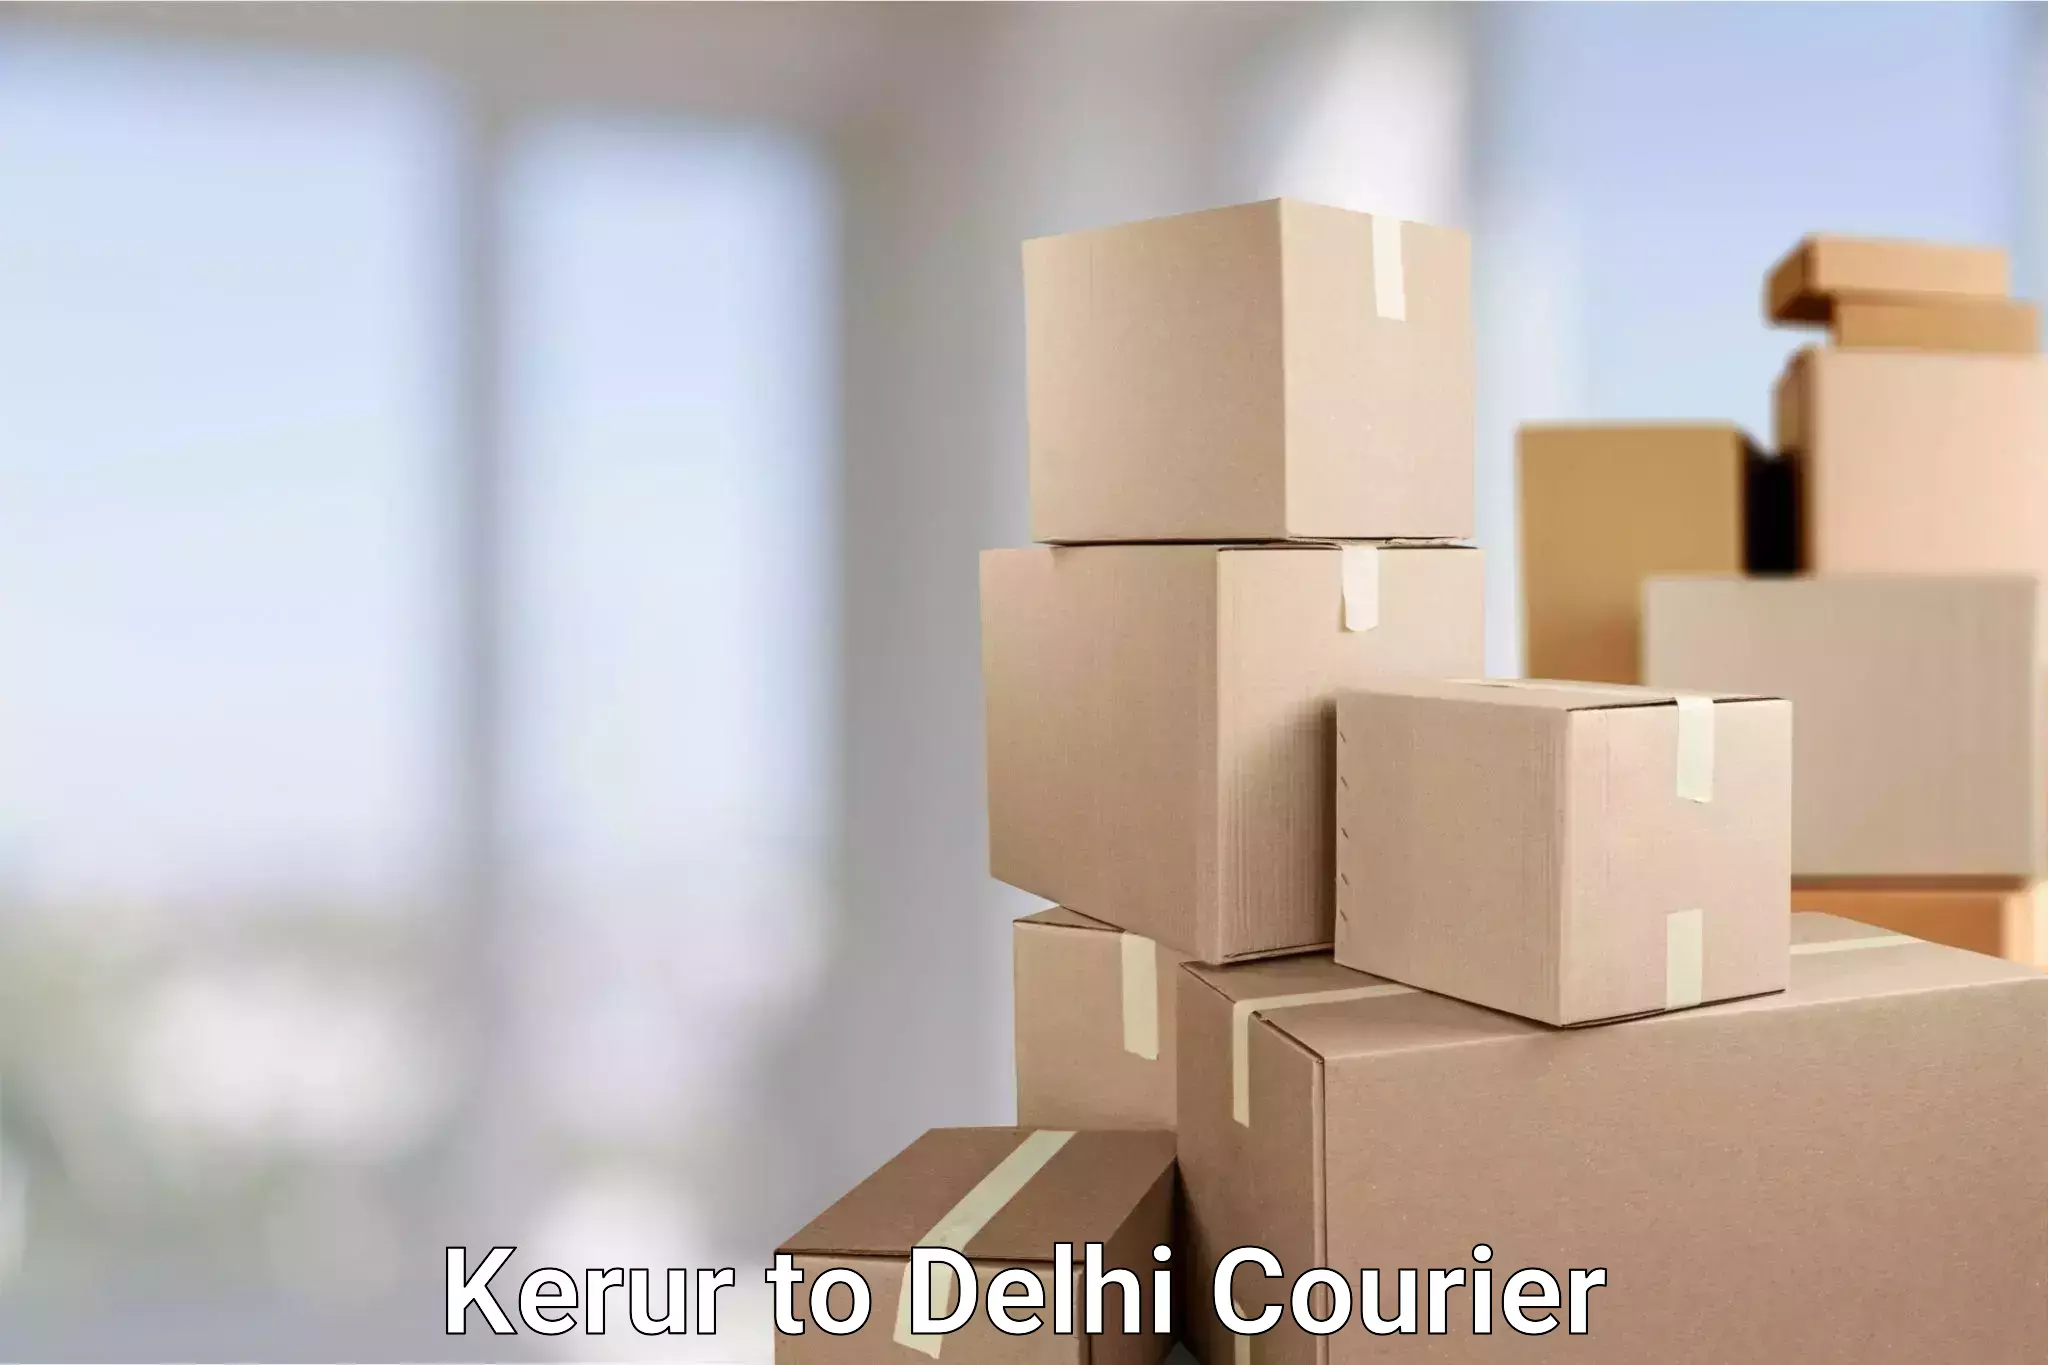 24/7 courier service Kerur to IIT Delhi